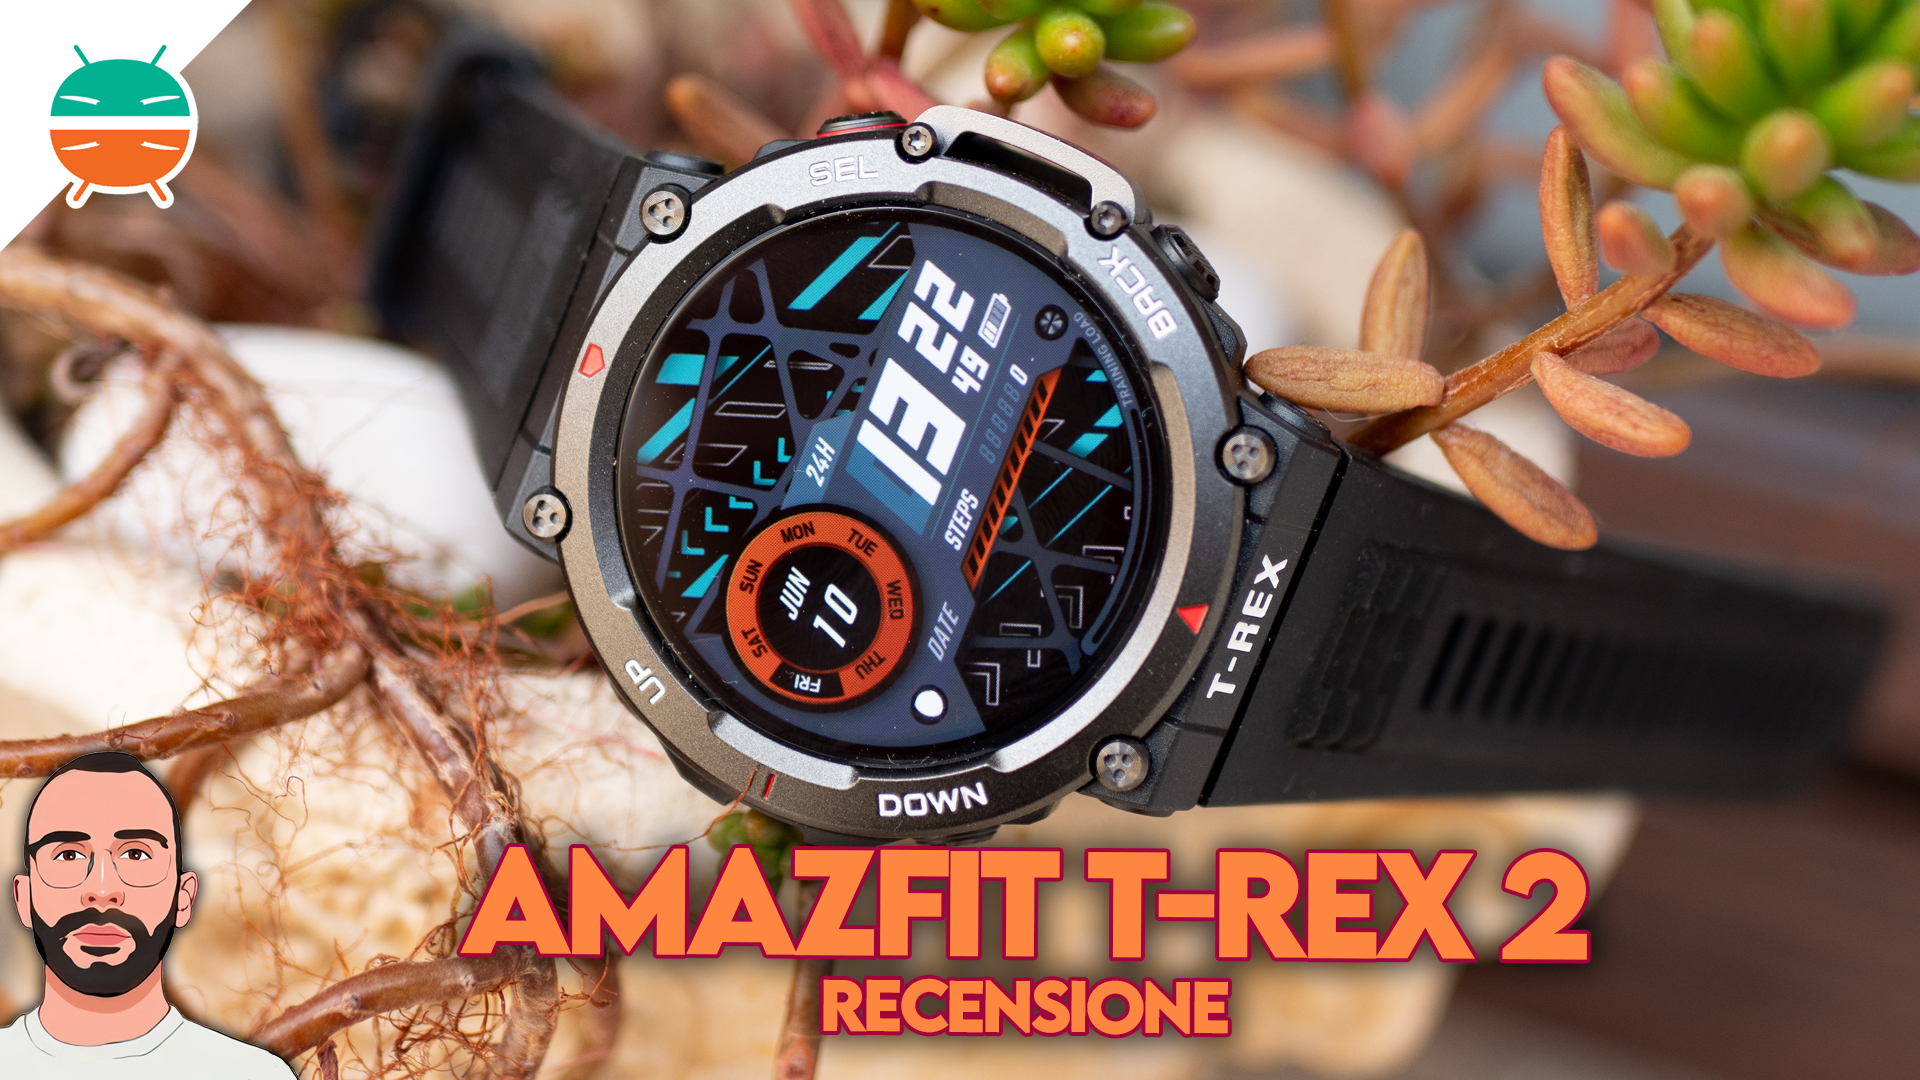 Amazfit T-Rex 2, análisis: un smartwatch todo terreno que sorprende en  todas sus facetas